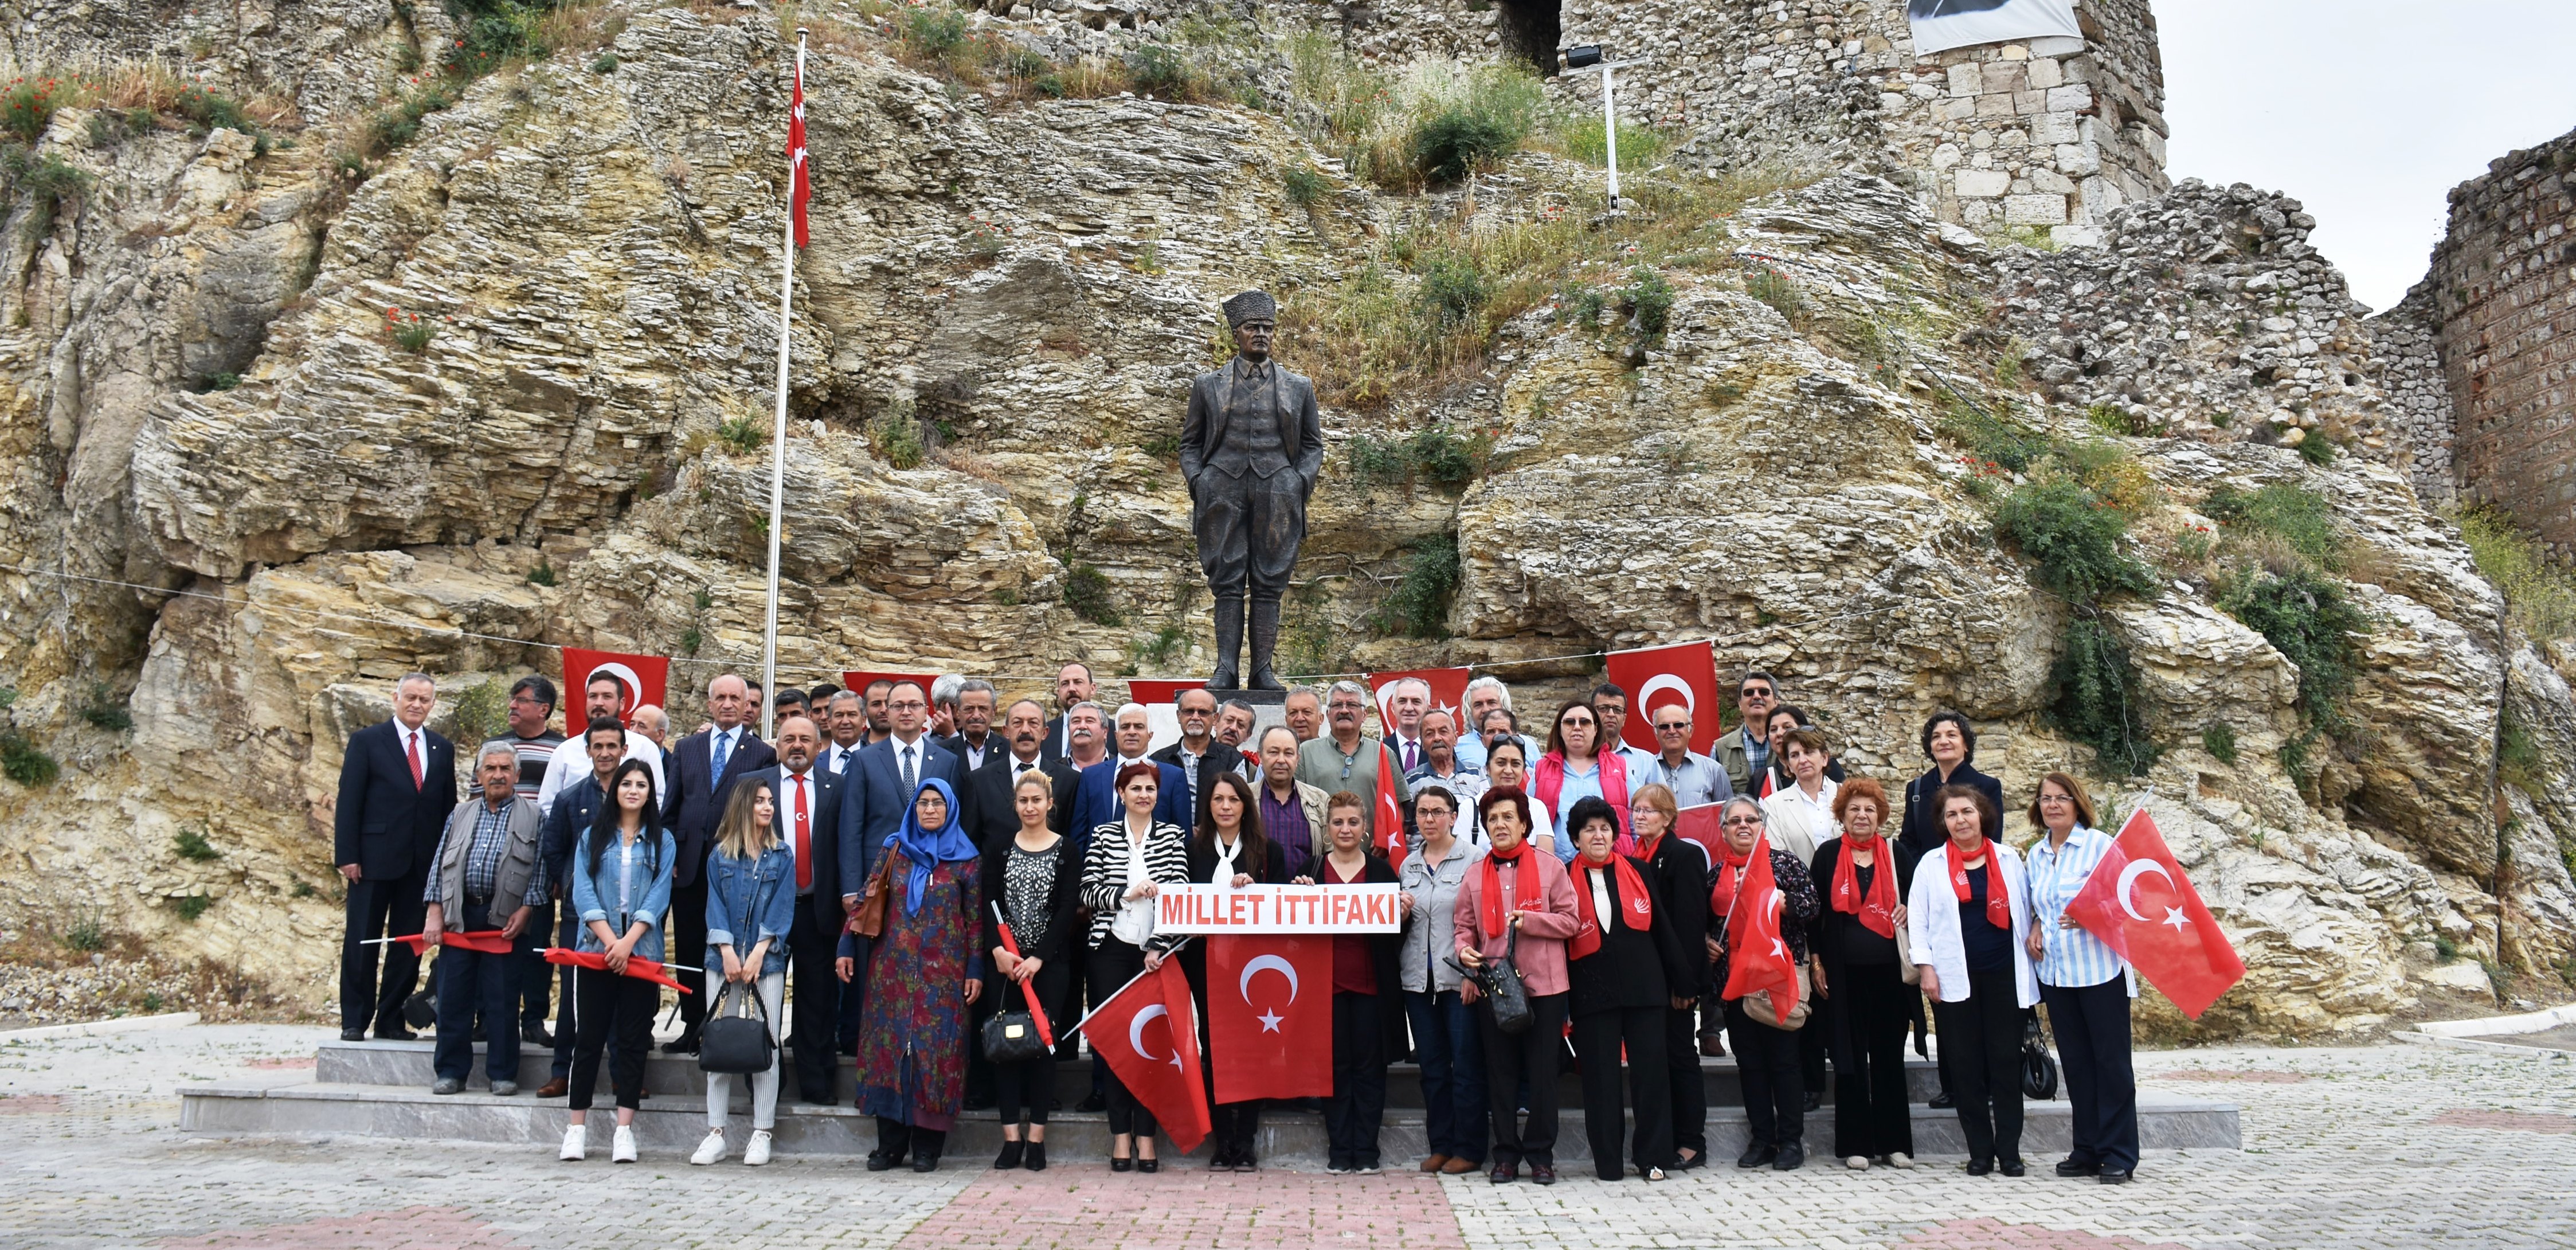 Millet İttifakı Atatürk’e Çelenk Sundu